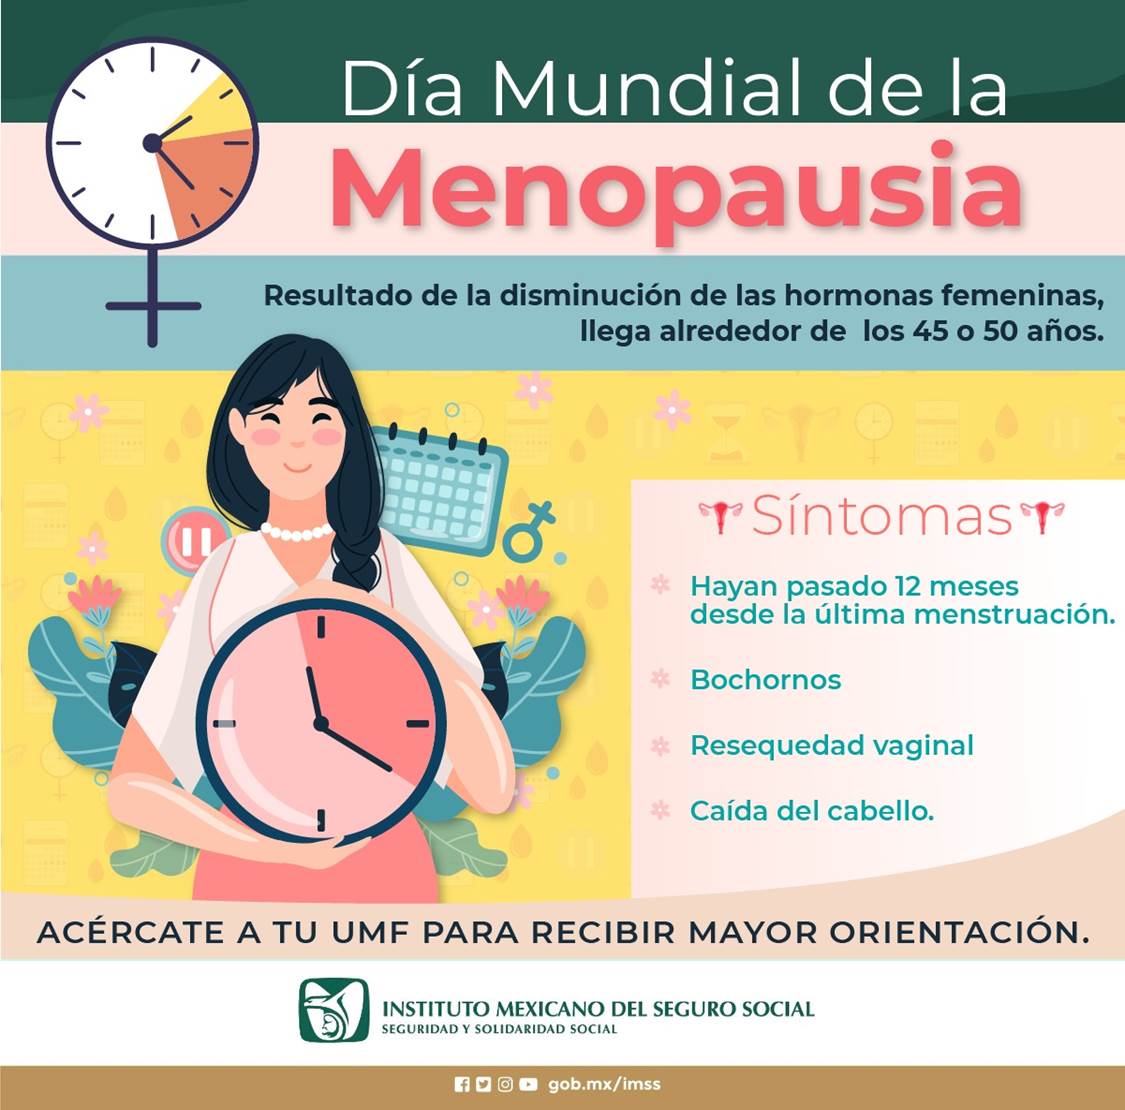 Informa IMSS sobre síntomas en la menopausia